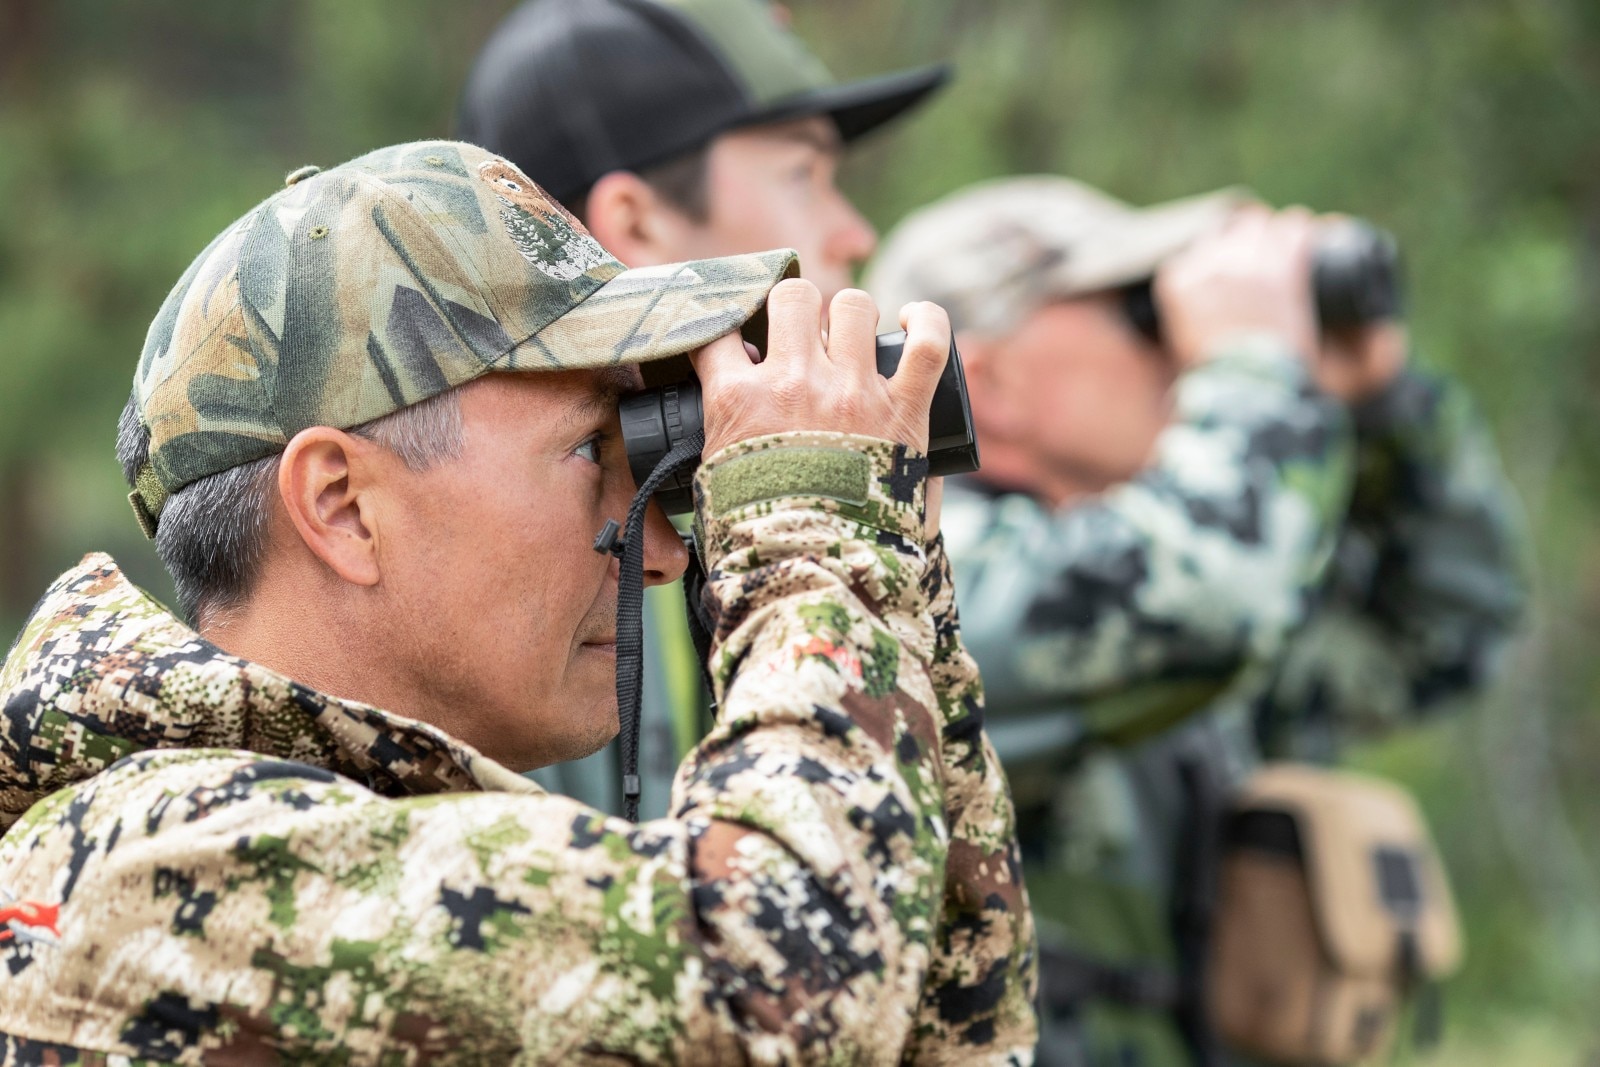 Hunters looking through their binoculars